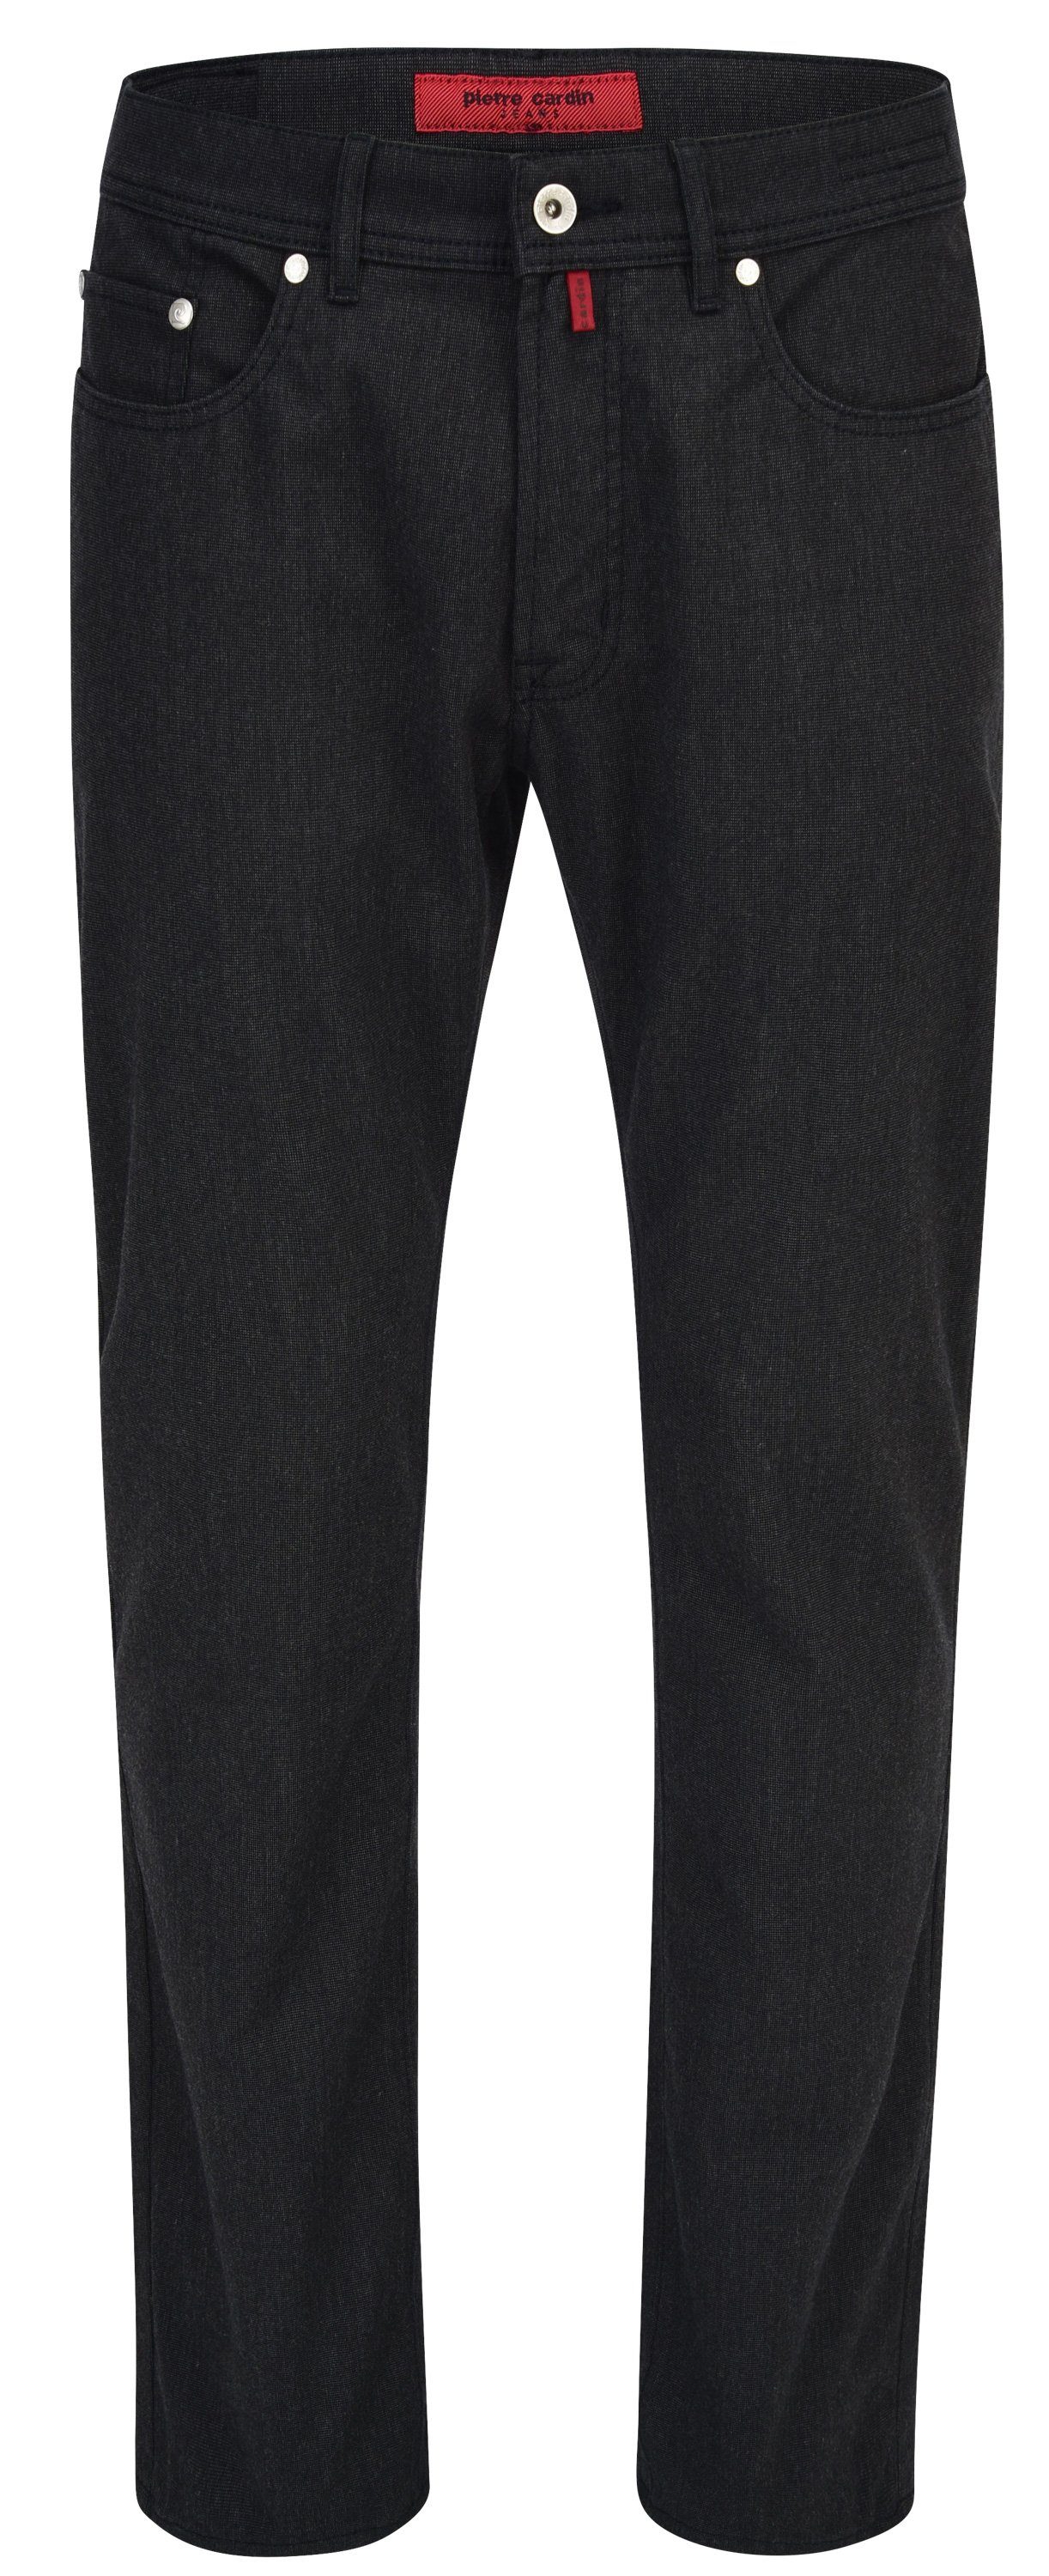 Pierre Cardin 5-Pocket-Jeans PIERRE CARDIN LYON schwarz 3091 4715.88 - VOYAGE